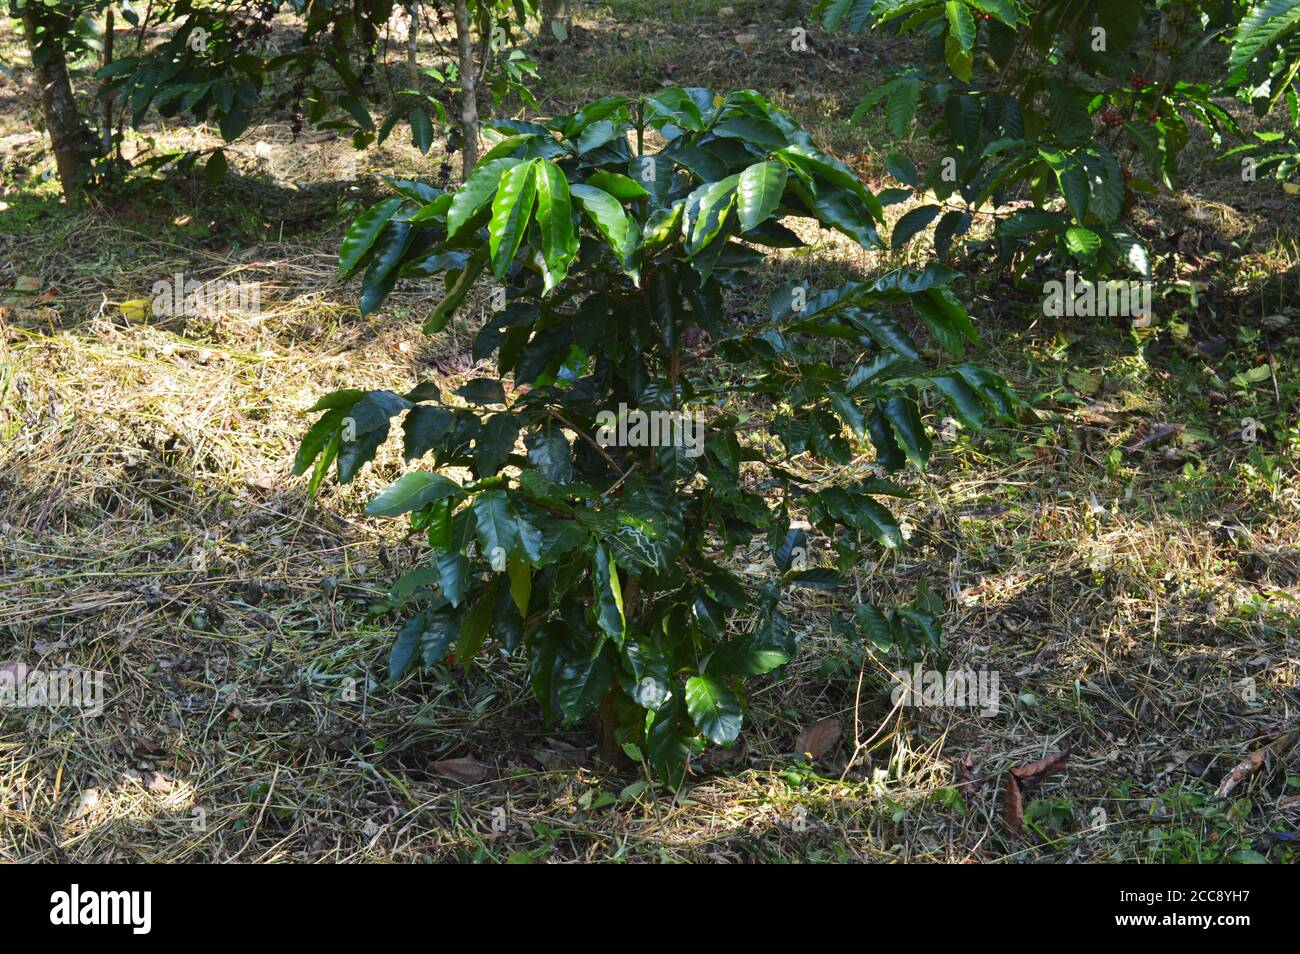 Coffea est un genre de plantes à fleurs de la famille des Rubiaceae. Les espèces de Coffea sont des arbustes ou de petits arbres indigènes à l'Afrique tropicale et australe. Banque D'Images